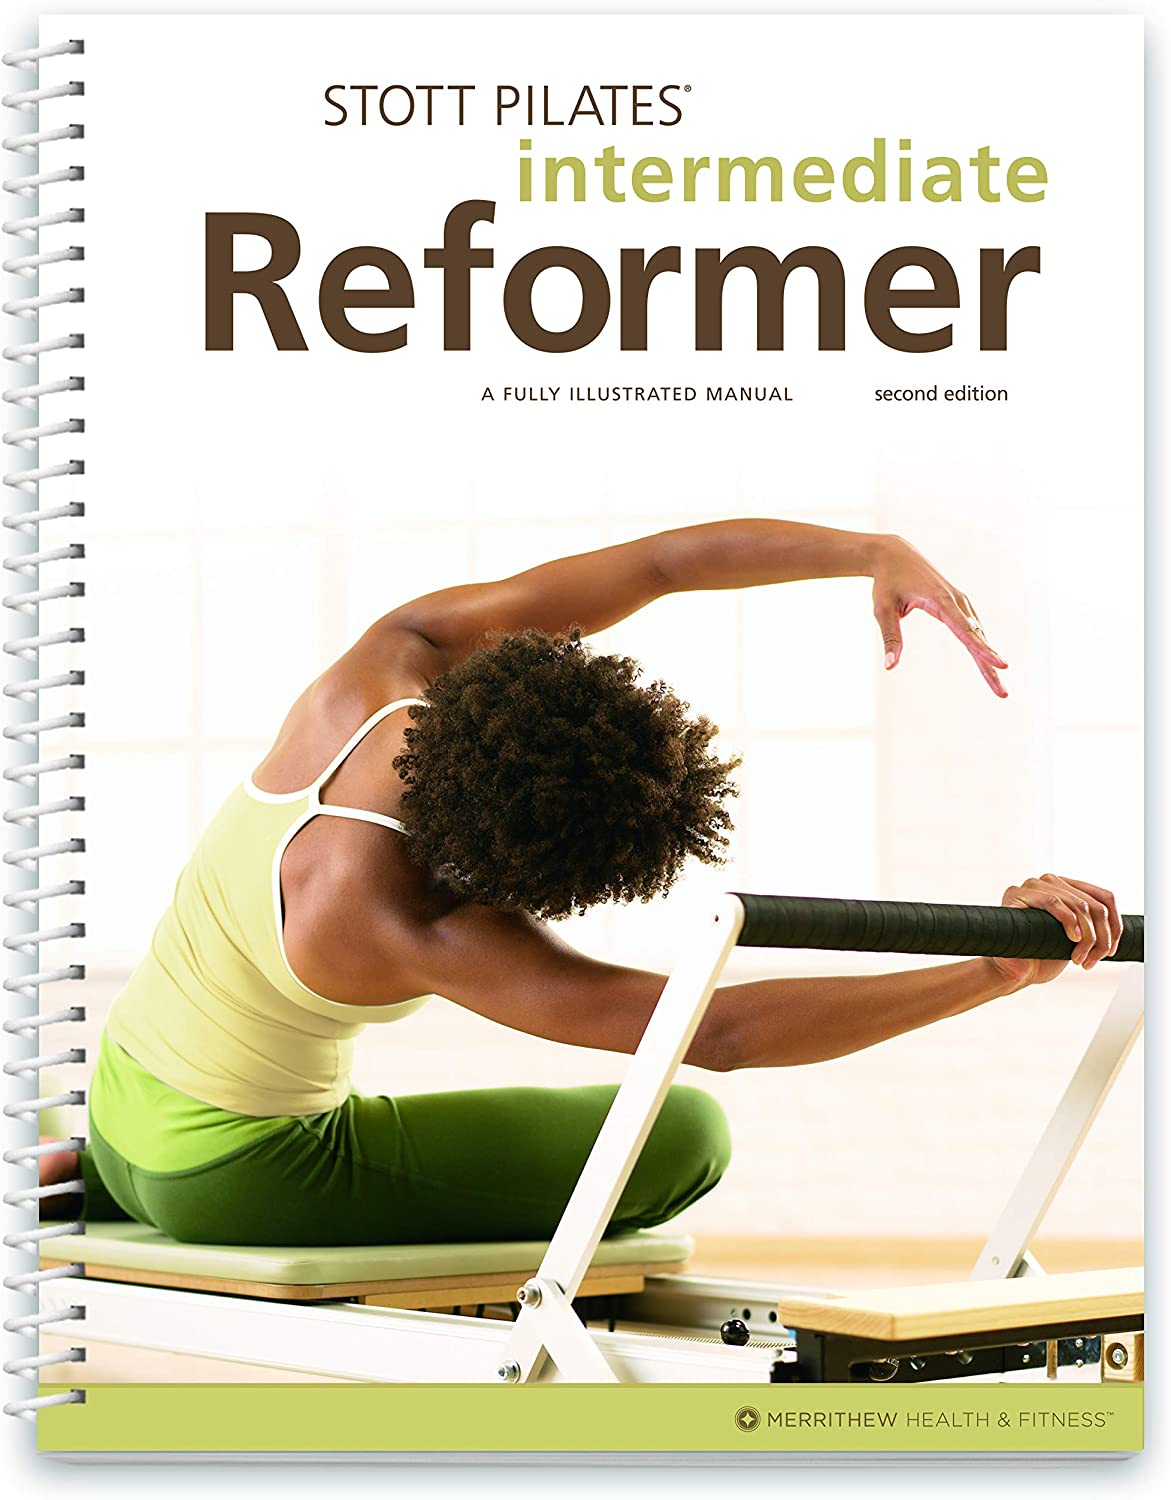 Pilates Reformer là gì?